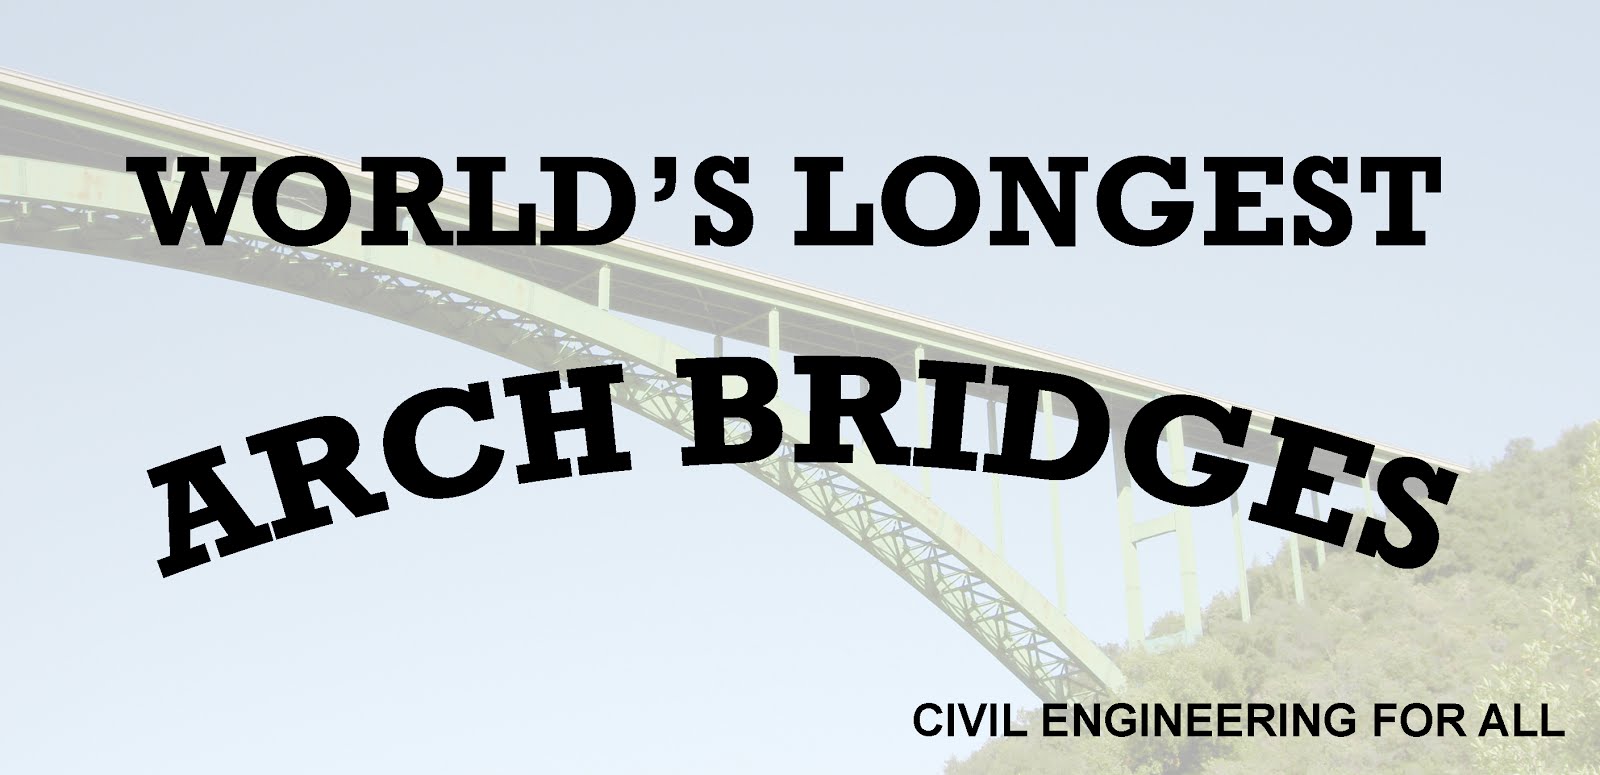 WORLD'S LONGEST ARCH BRIDGES